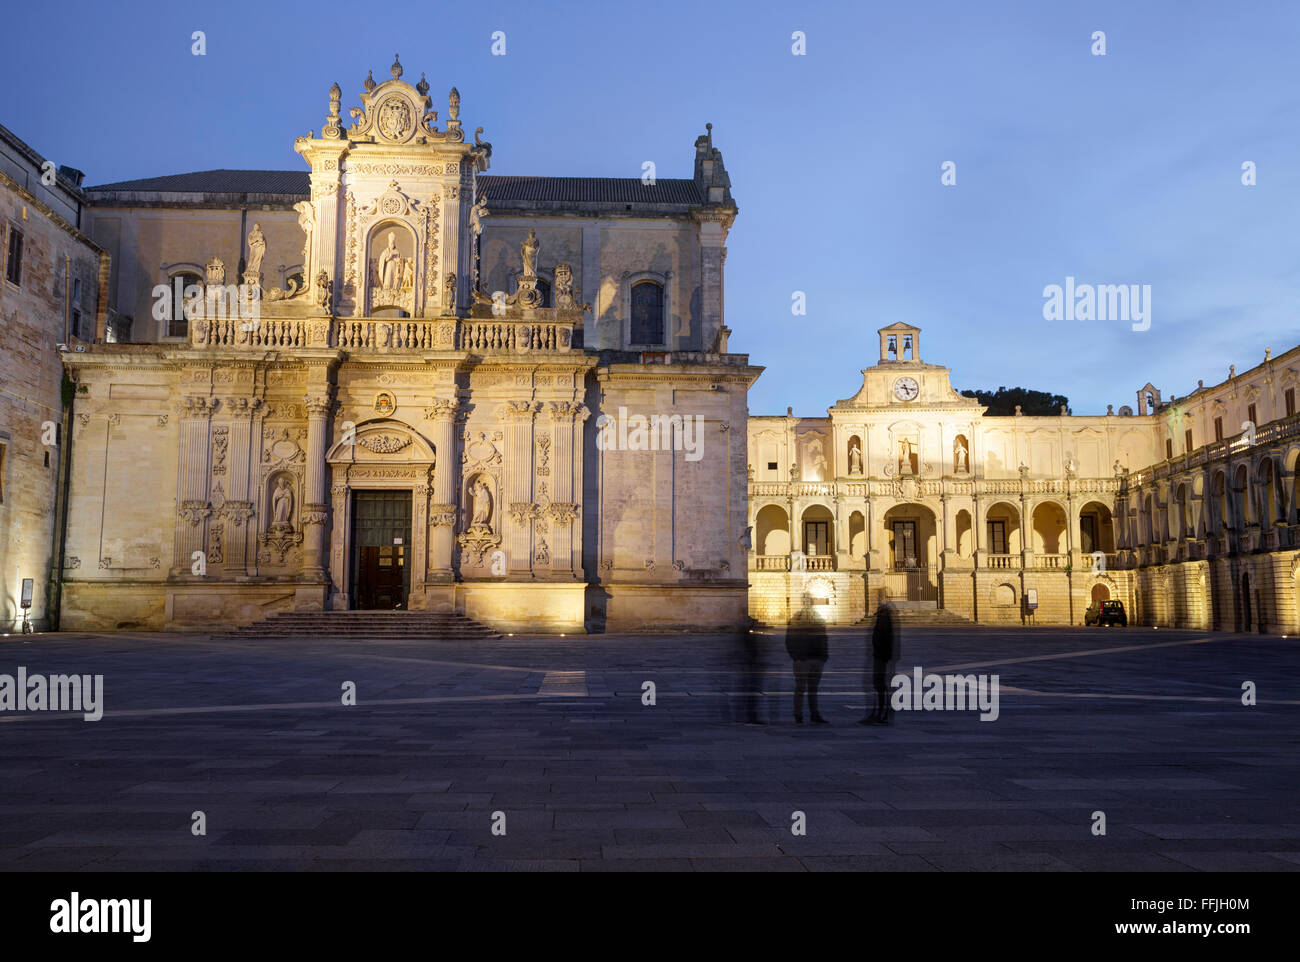 Piazza del Duomo, Lecce, Puglia, Italy Stock Photo